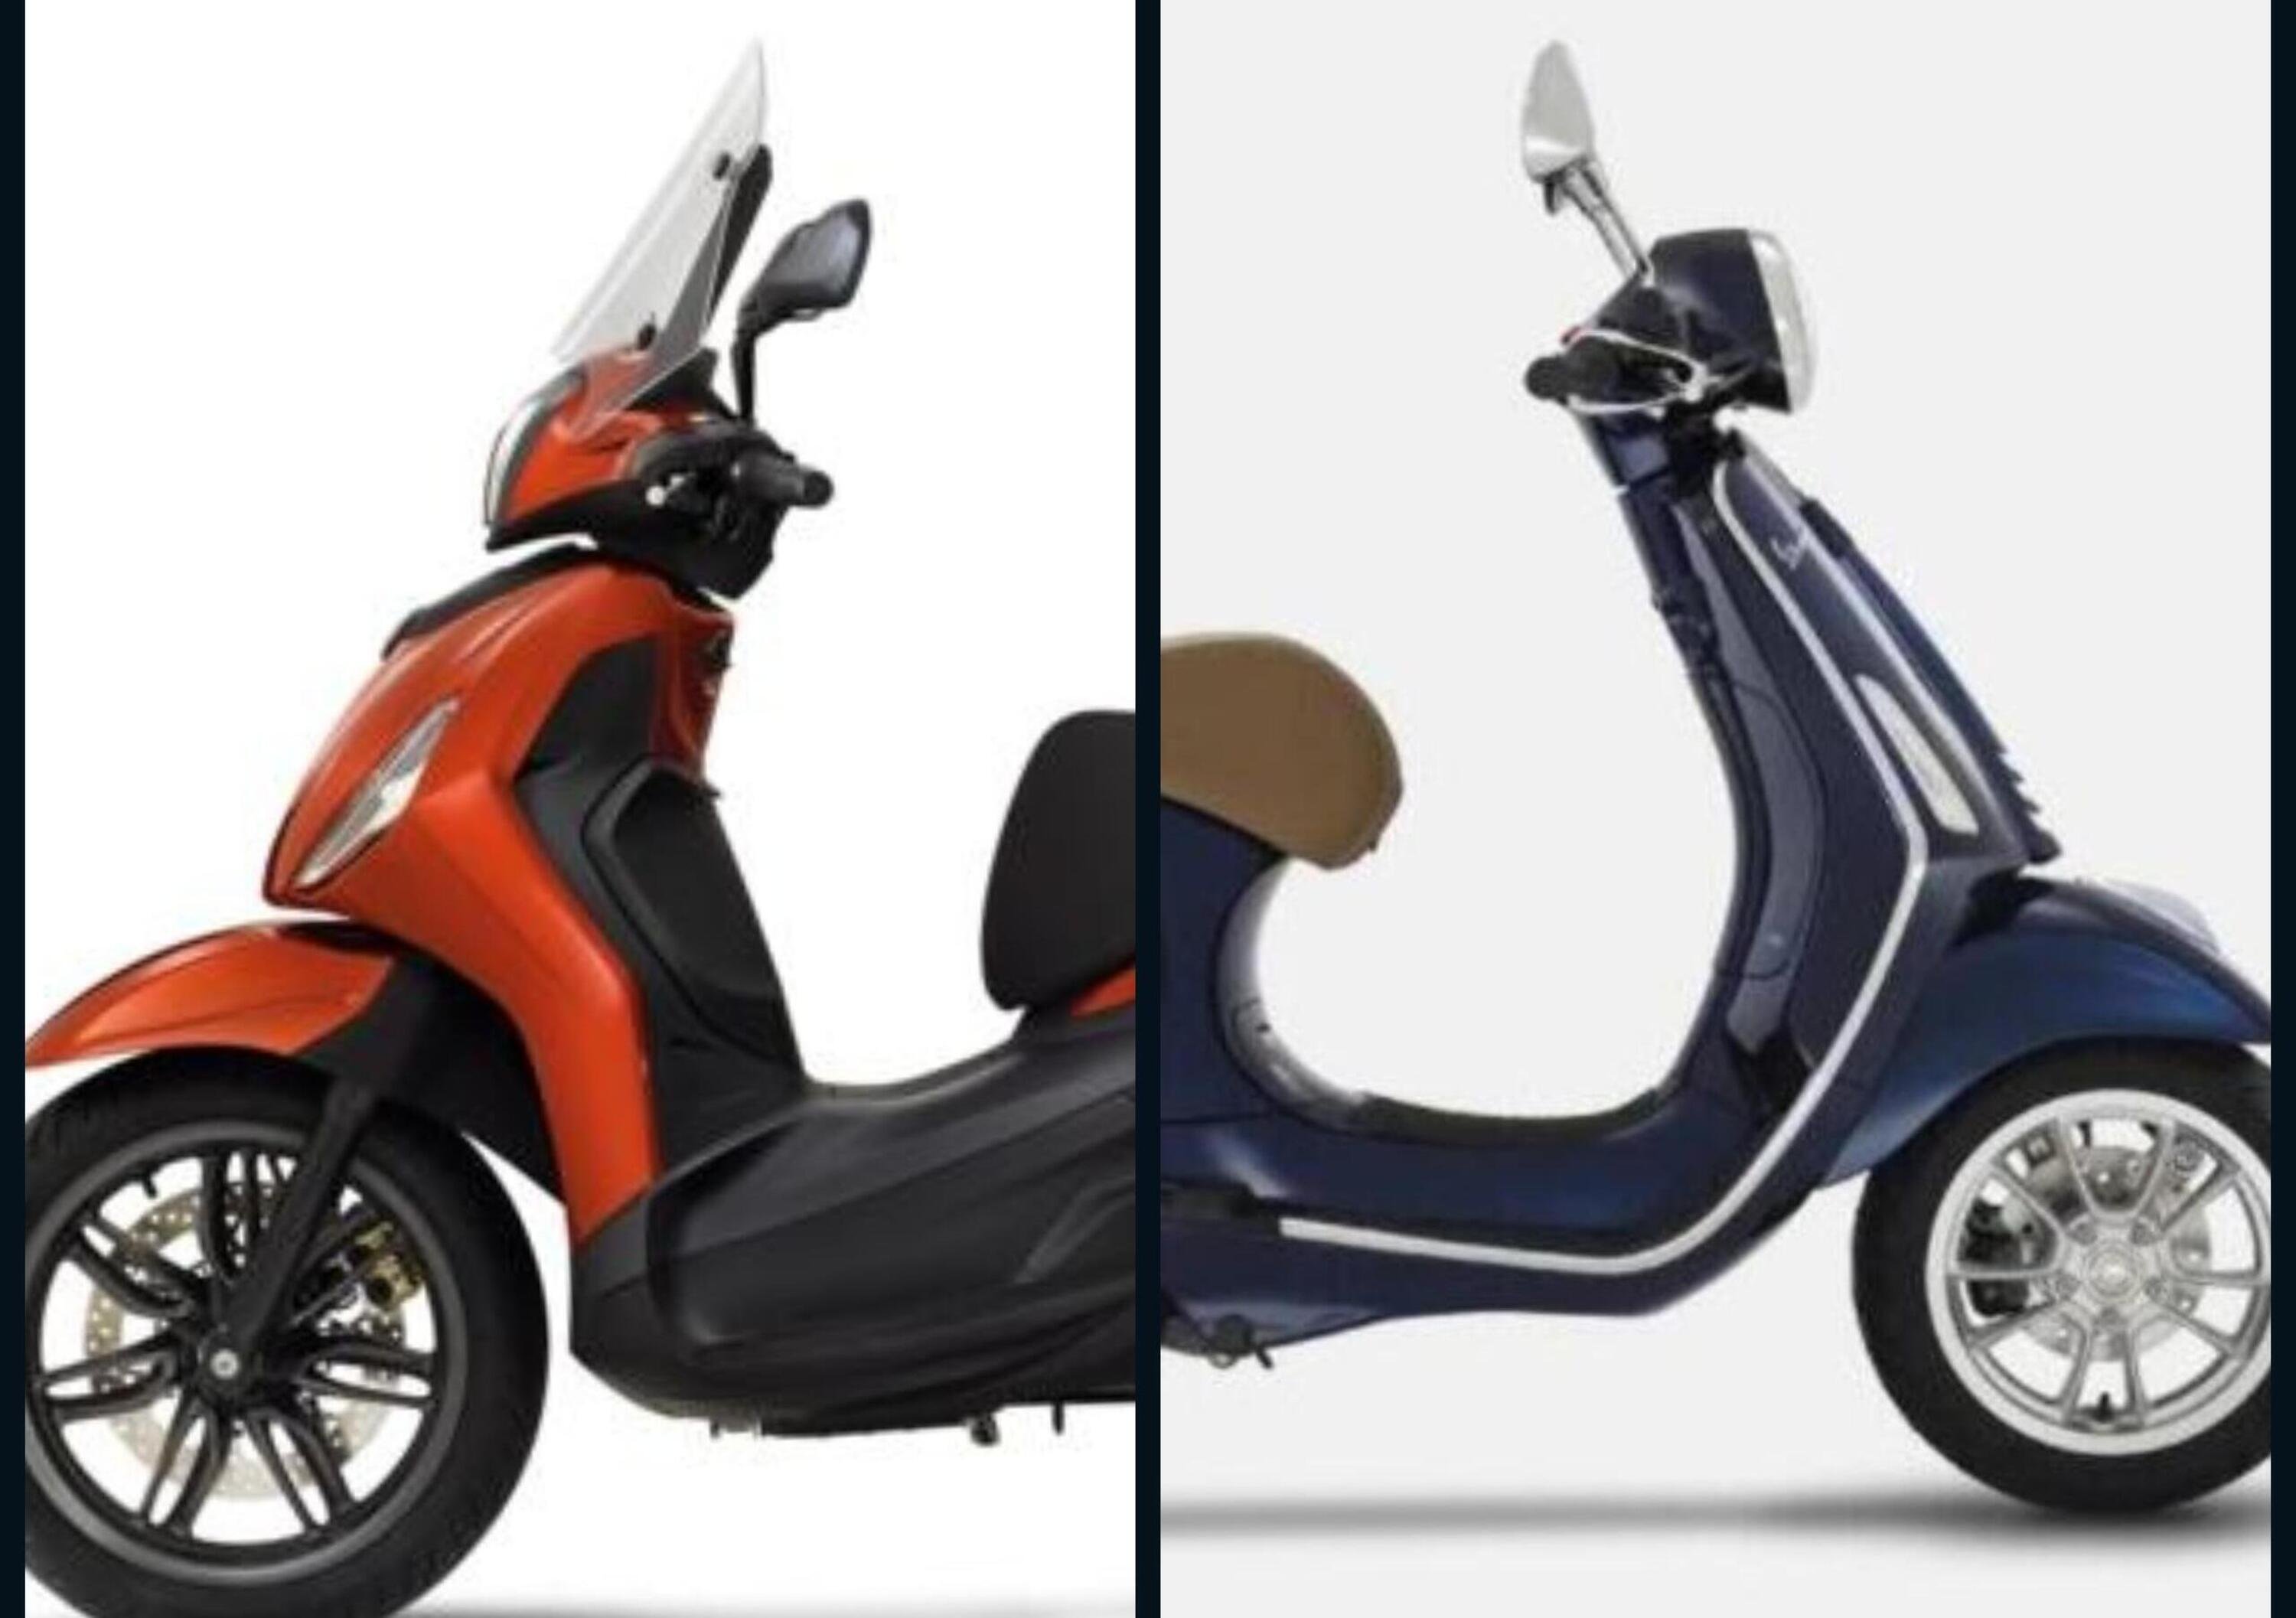 Usa: Piaggio Beverly e Vespa, tra gli scooter pi&ugrave; interessanti del 2021 secondo Forbes